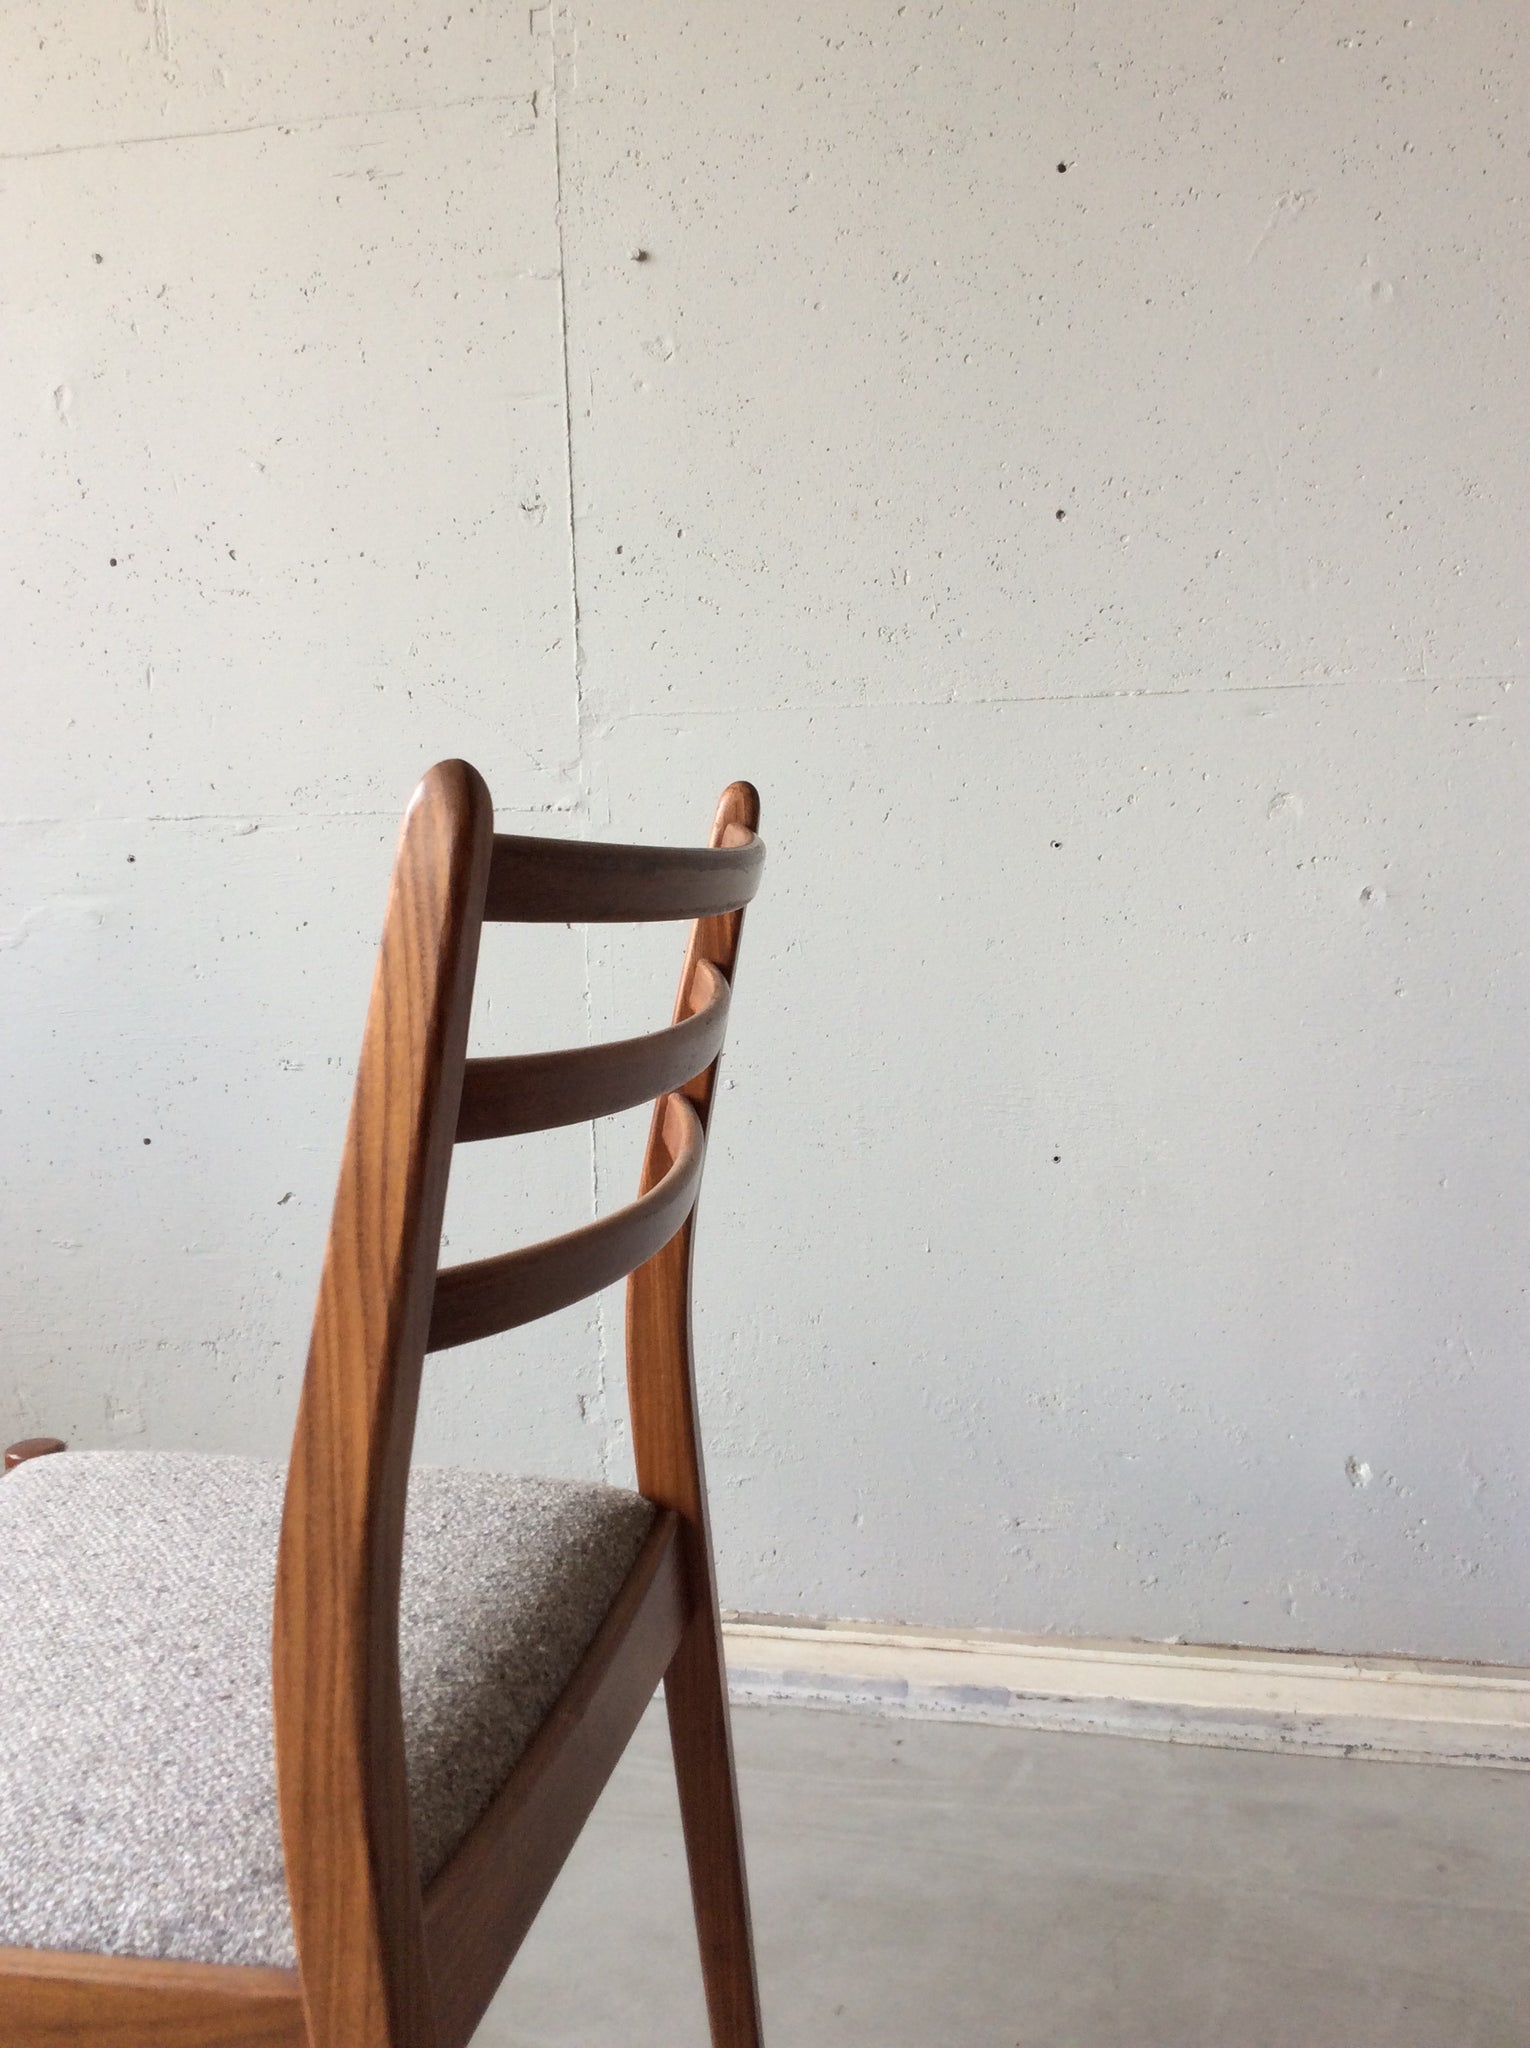 ジープラン チェア４脚セット / g-plan chairs set of 4 #0059